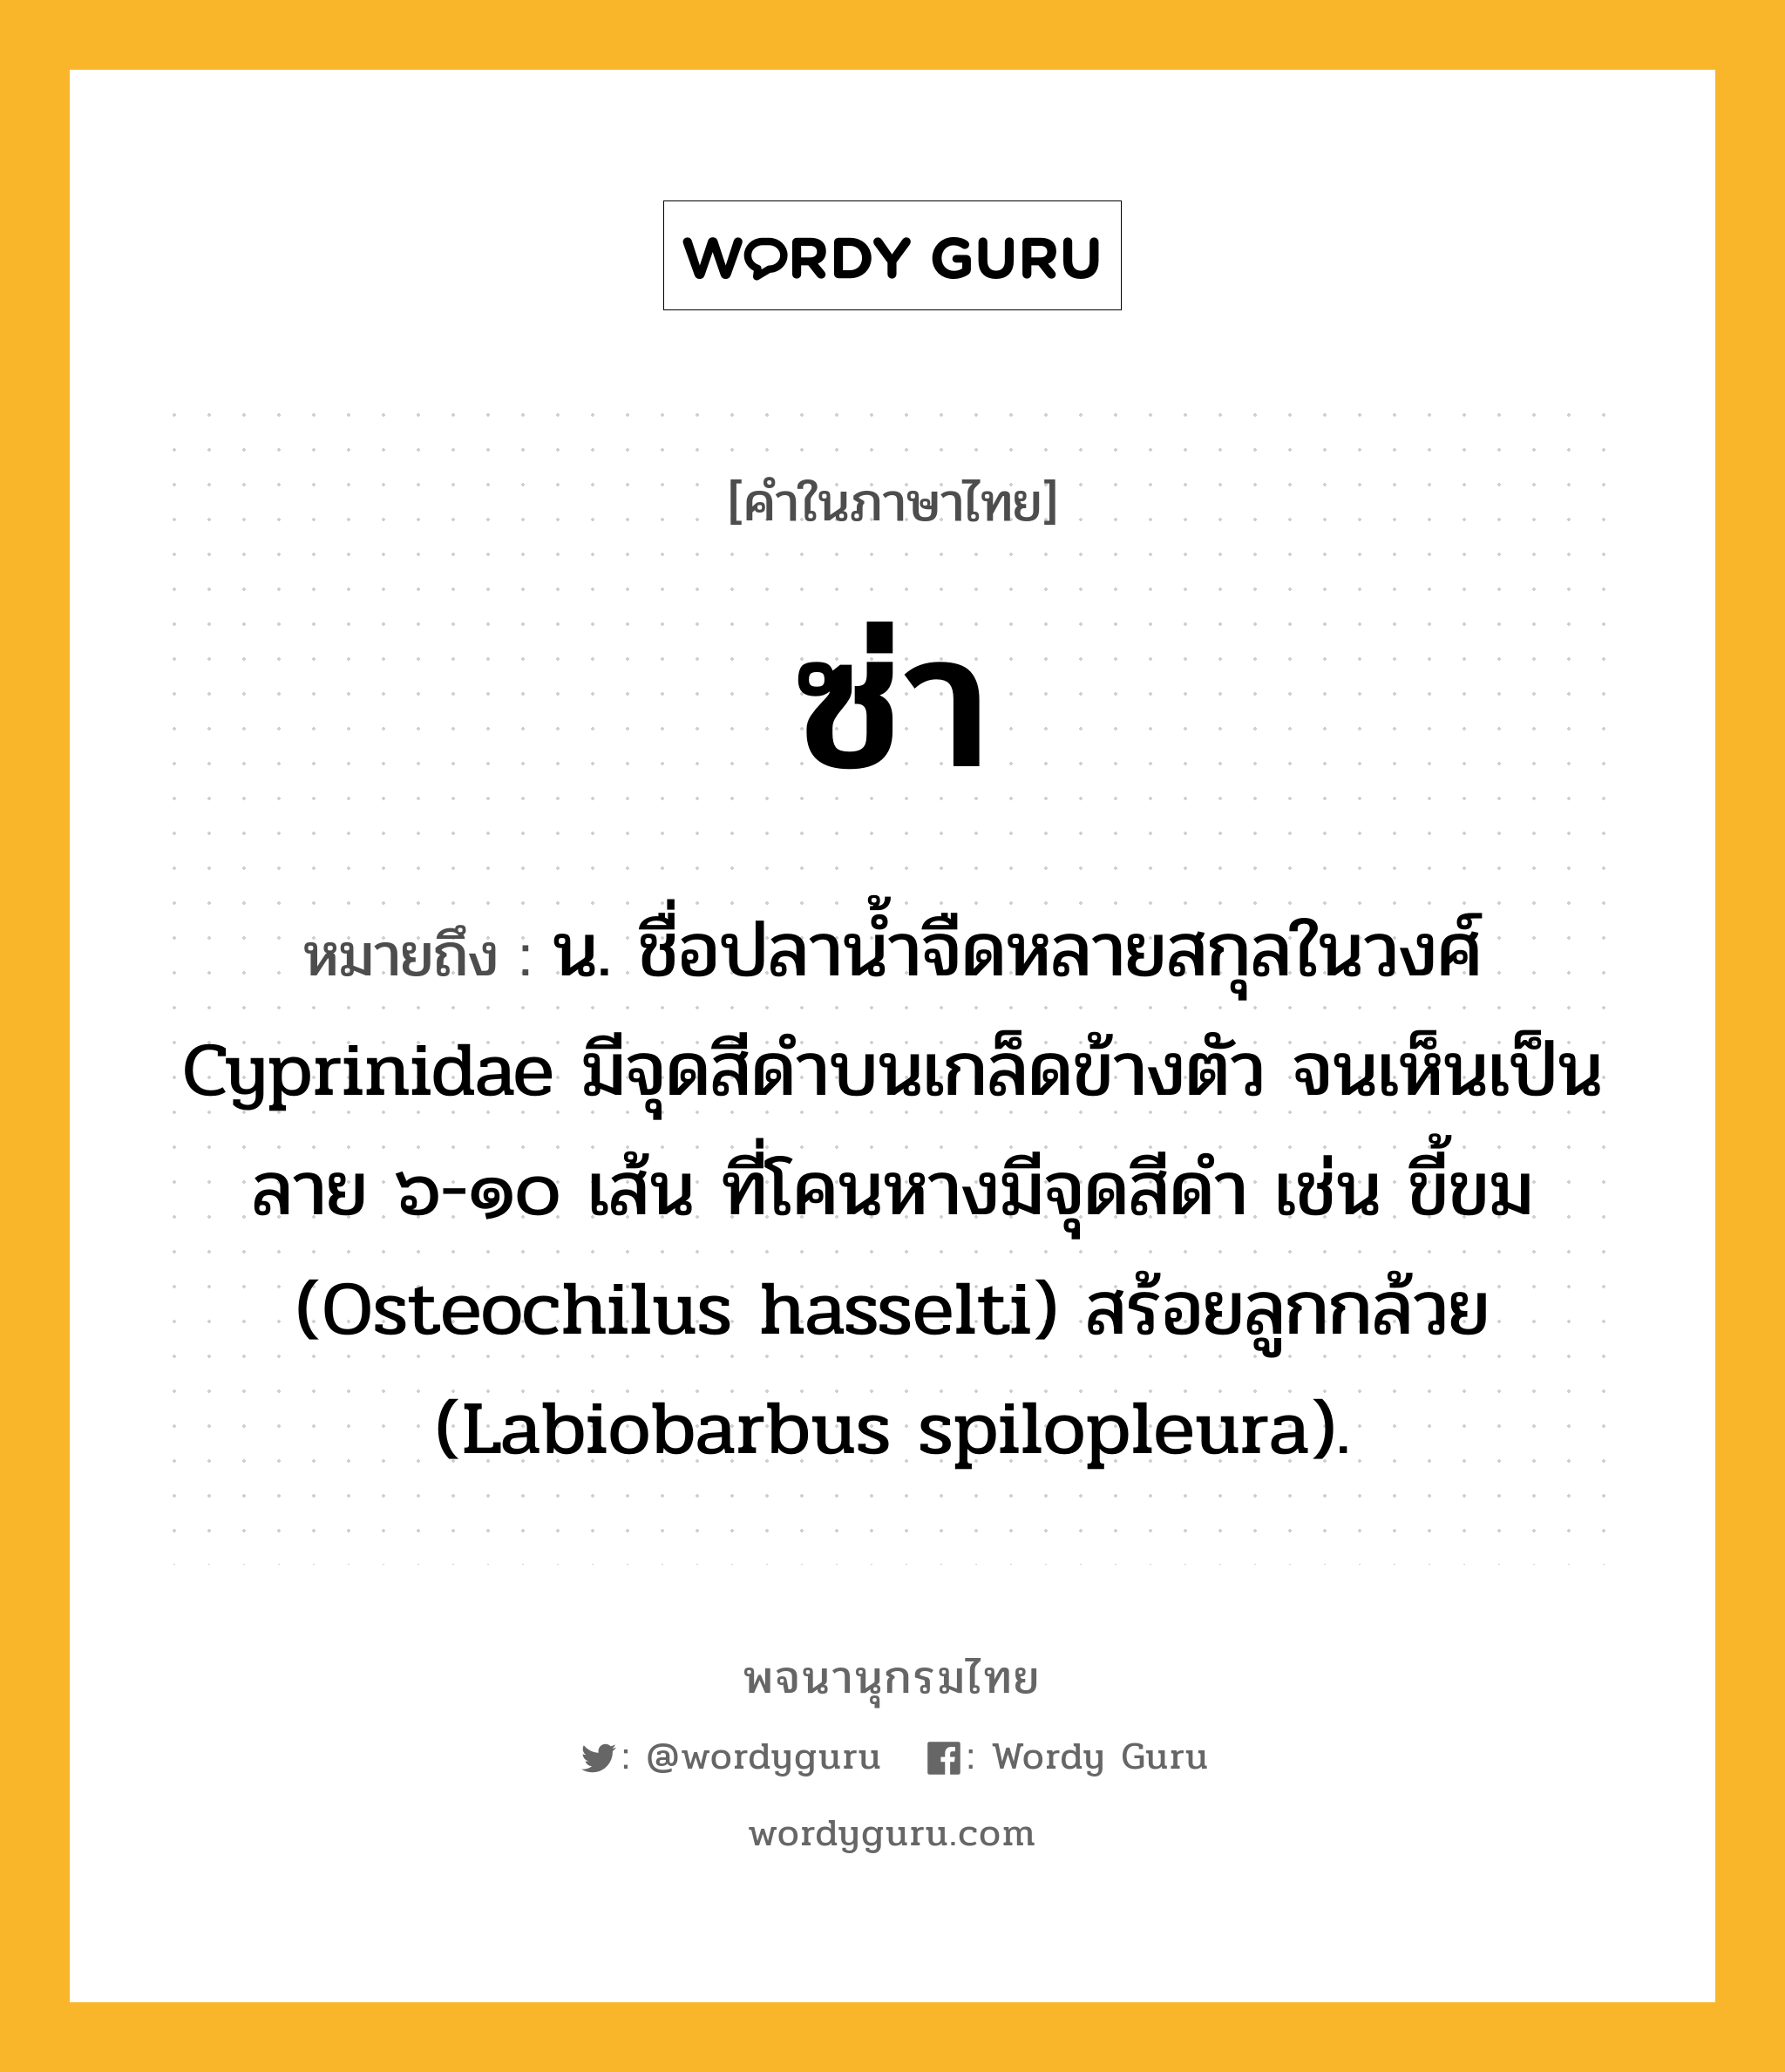 ซ่า หมายถึงอะไร?, คำในภาษาไทย ซ่า หมายถึง น. ชื่อปลานํ้าจืดหลายสกุลในวงศ์ Cyprinidae มีจุดสีดําบนเกล็ดข้างตัว จนเห็นเป็นลาย ๖-๑๐ เส้น ที่โคนหางมีจุดสีดํา เช่น ขี้ขม (Osteochilus hasselti) สร้อยลูกกล้วย (Labiobarbus spilopleura).